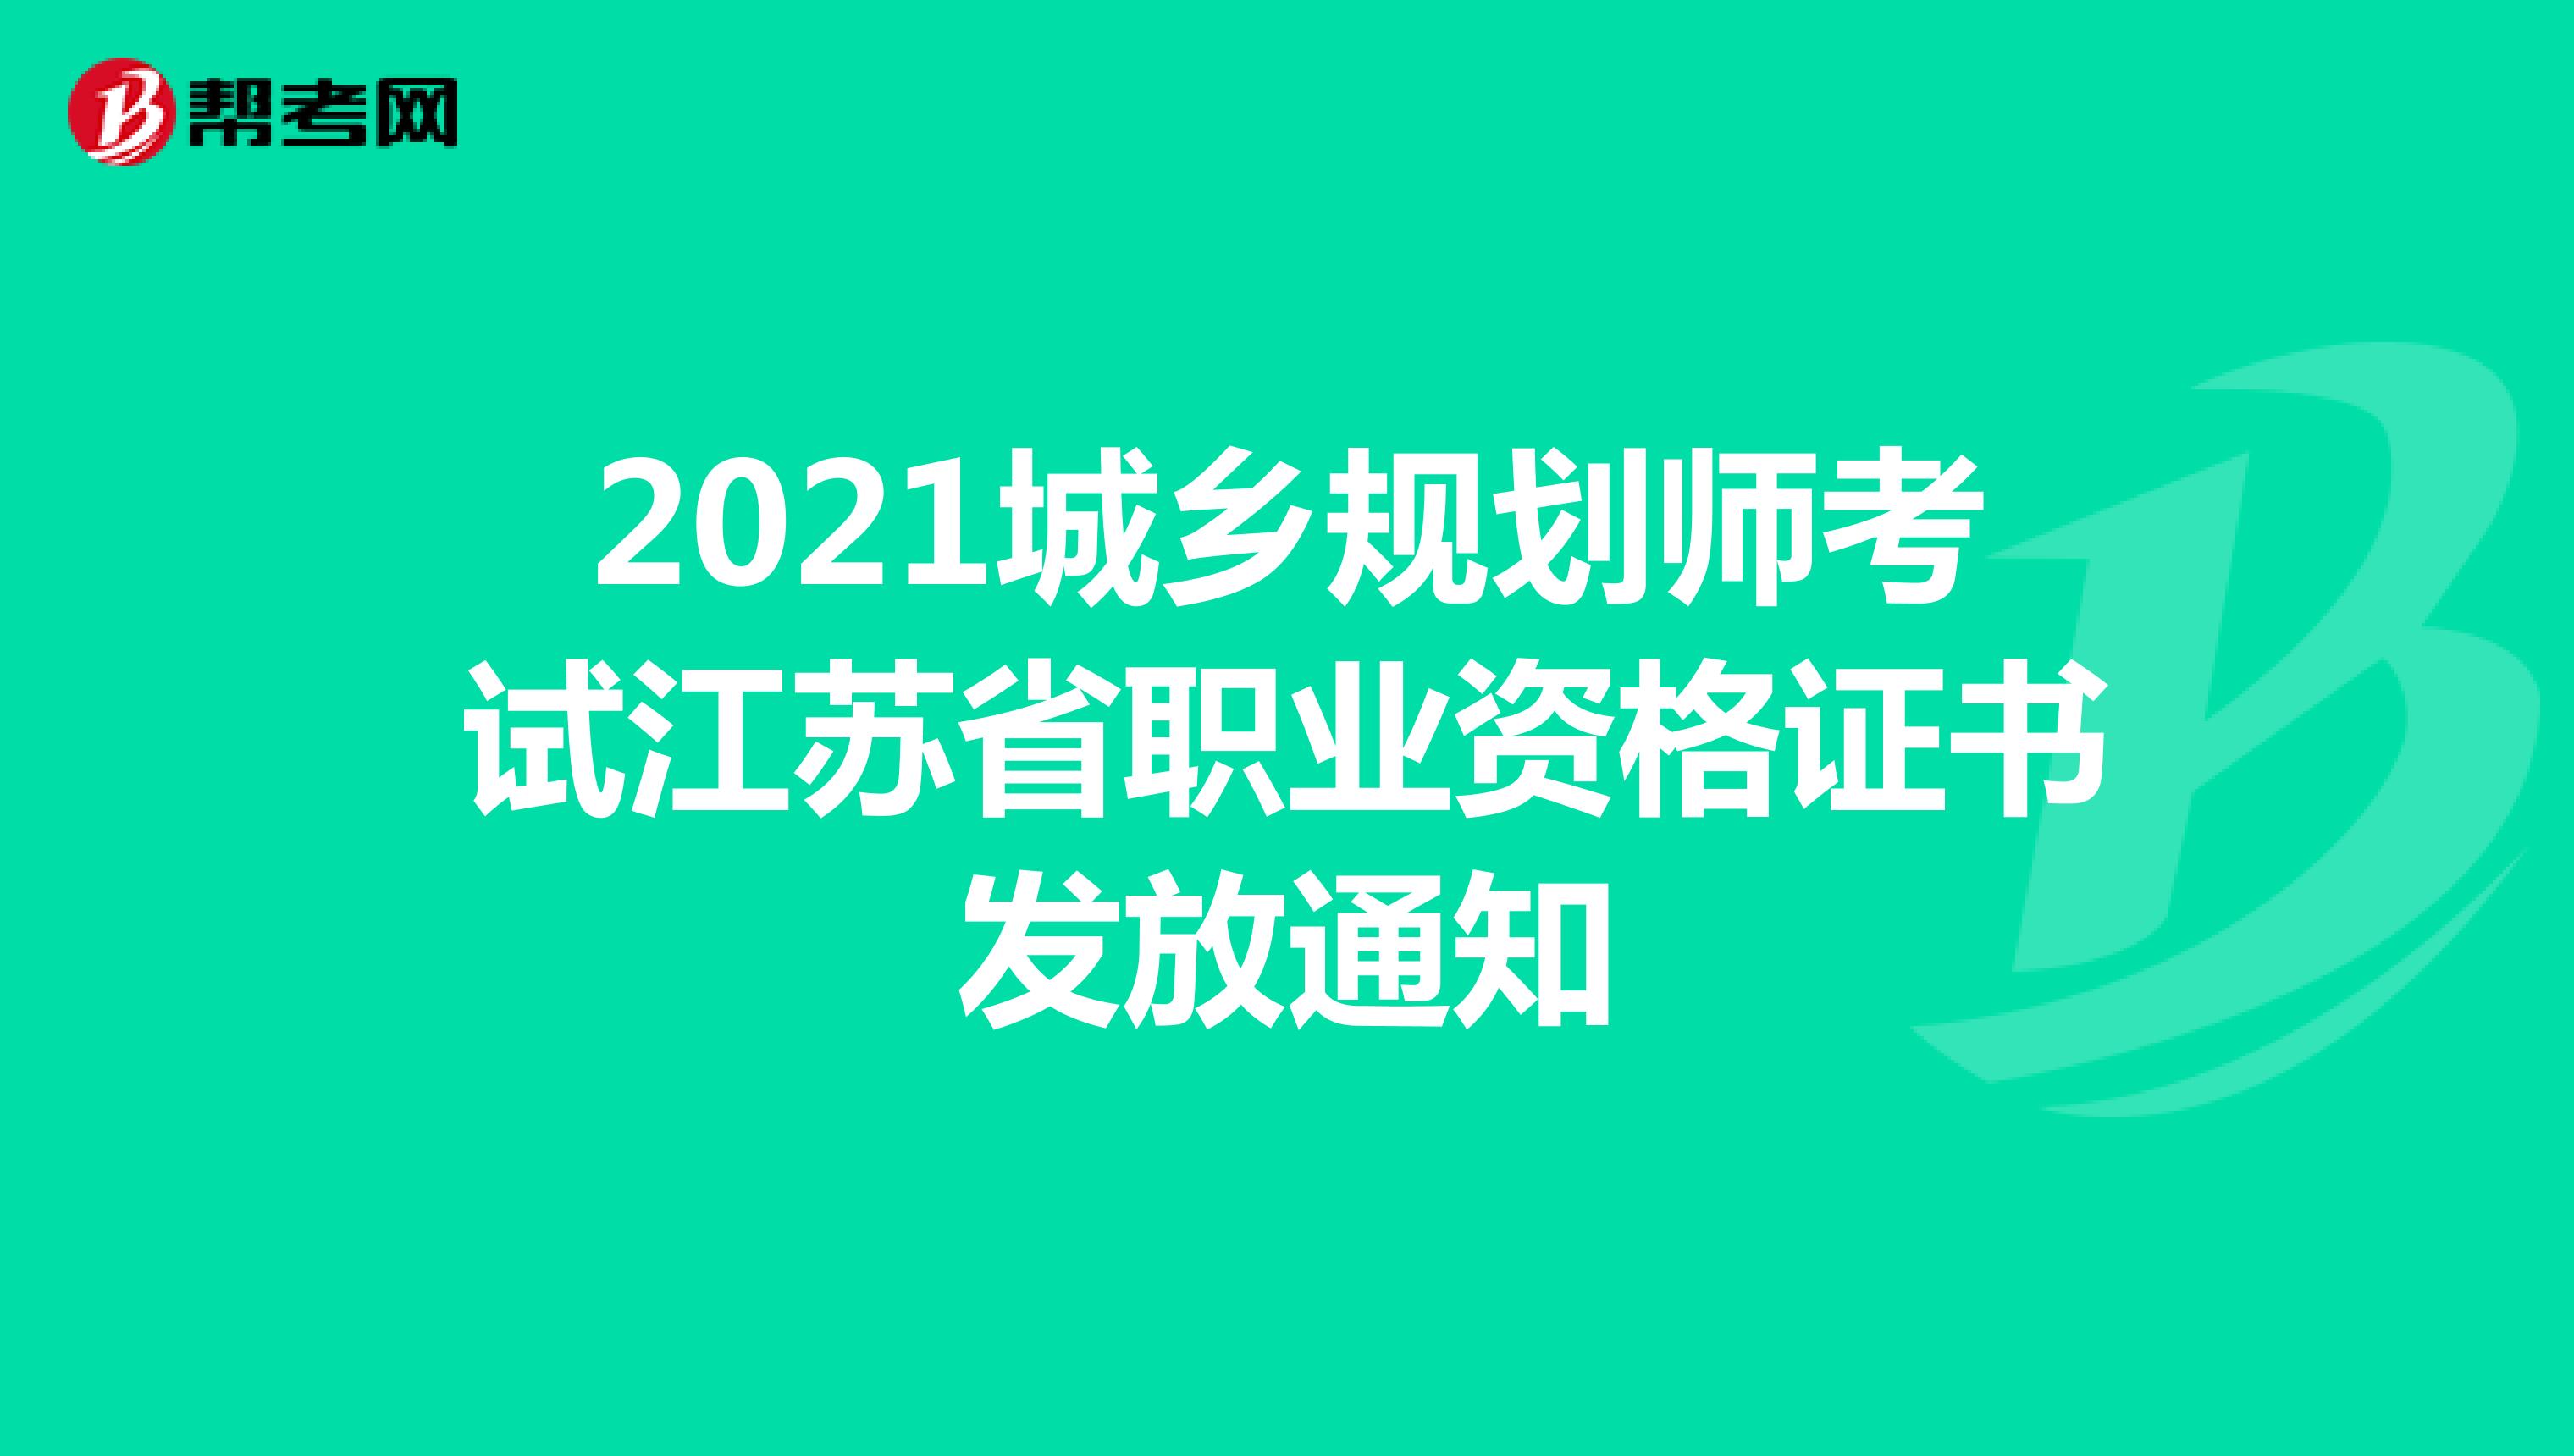 2021城乡规划师考试江苏省职业资格证书发放通知